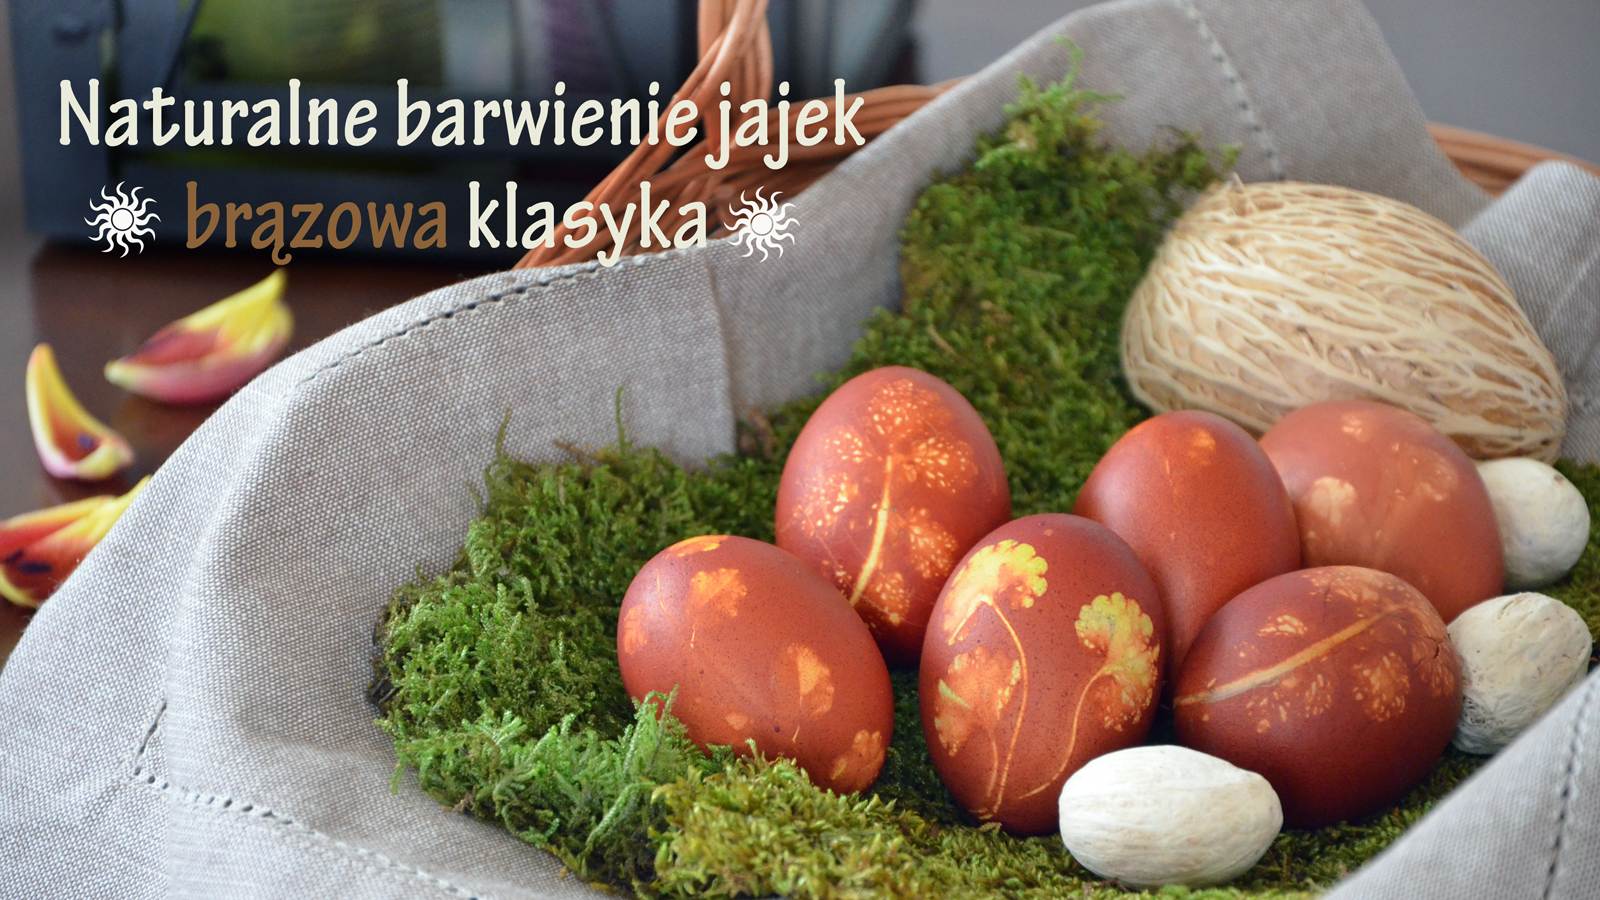 Naturalne barwienie jajek - brązowa klasyka, ilustracja